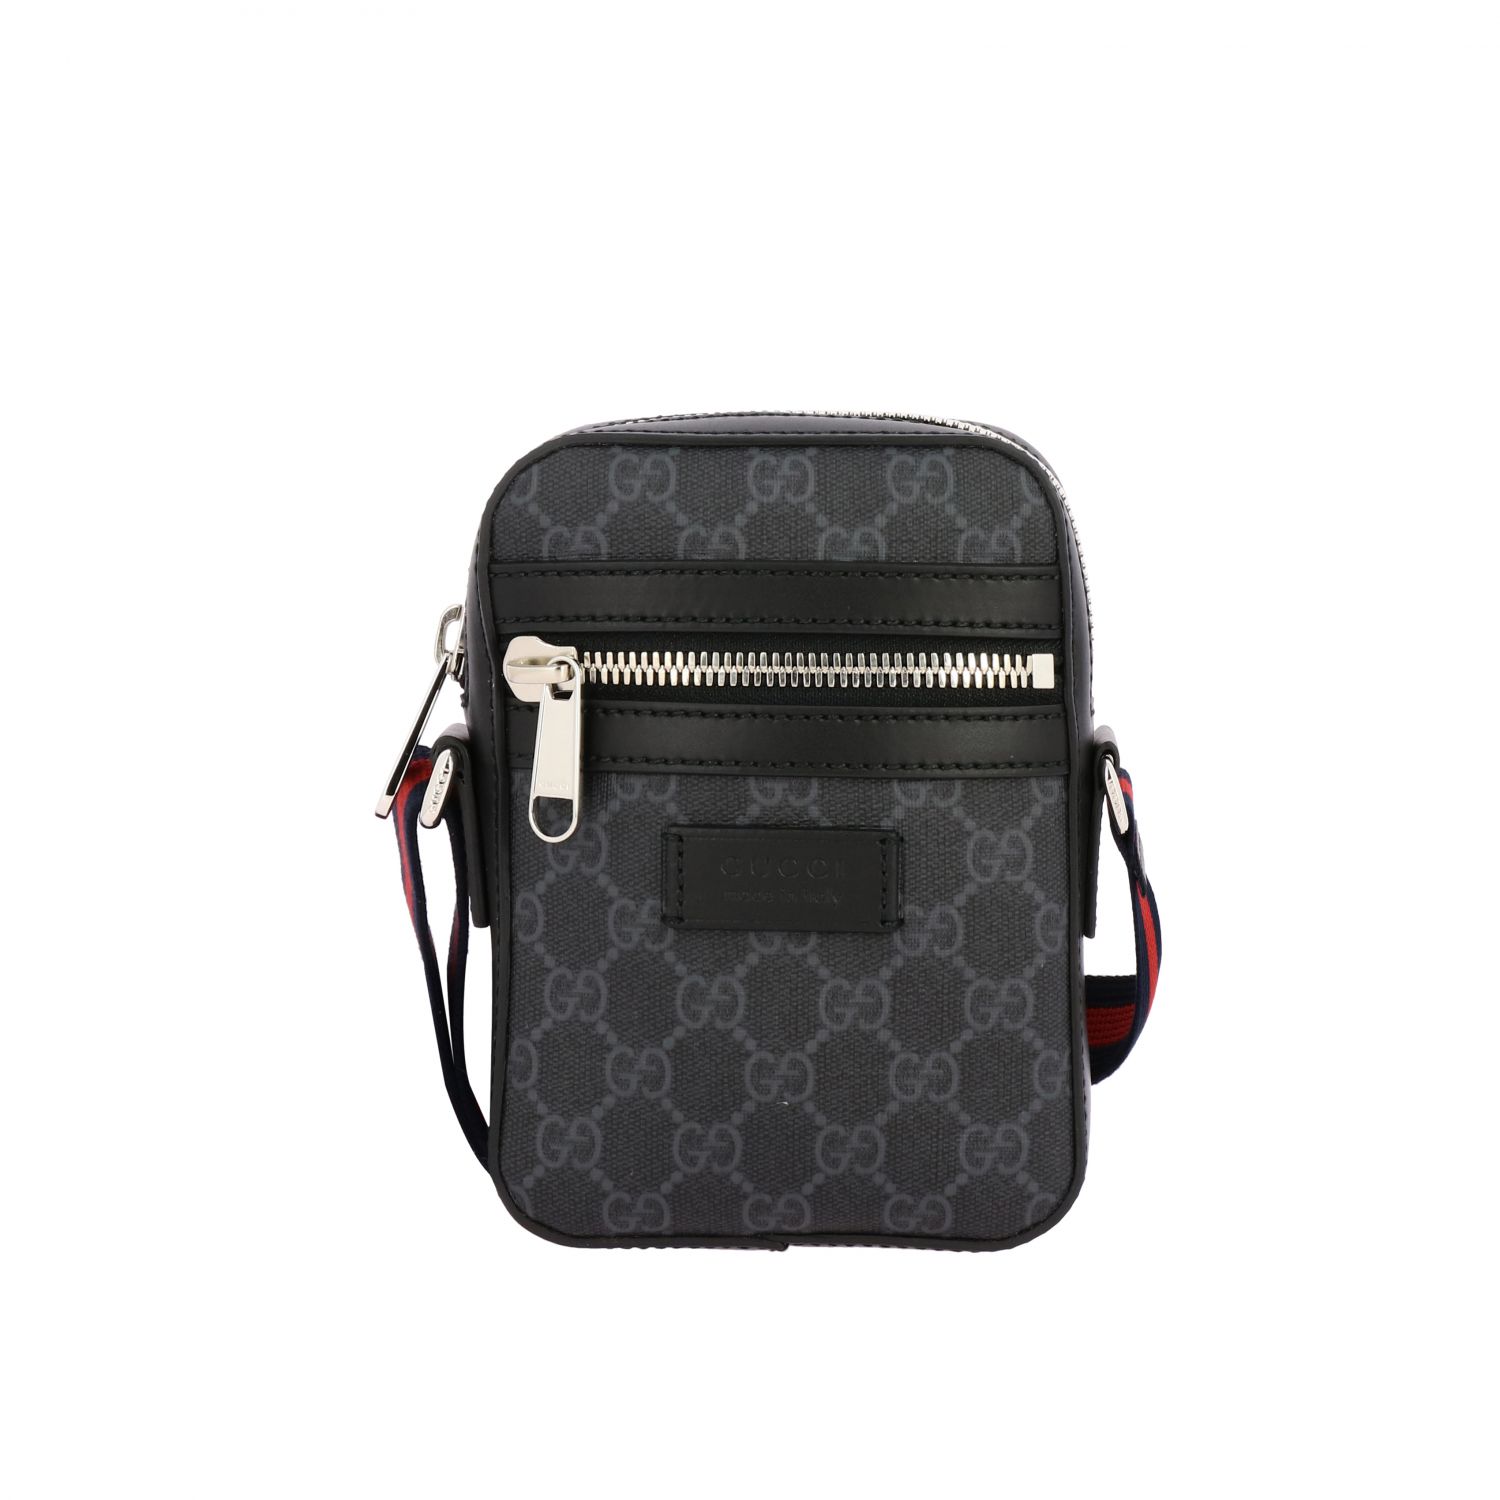 GUCCI: Supreme leather shoulder bag - Black | Gucci shoulder bag 598103 K5RLN online on GIGLIO.COM